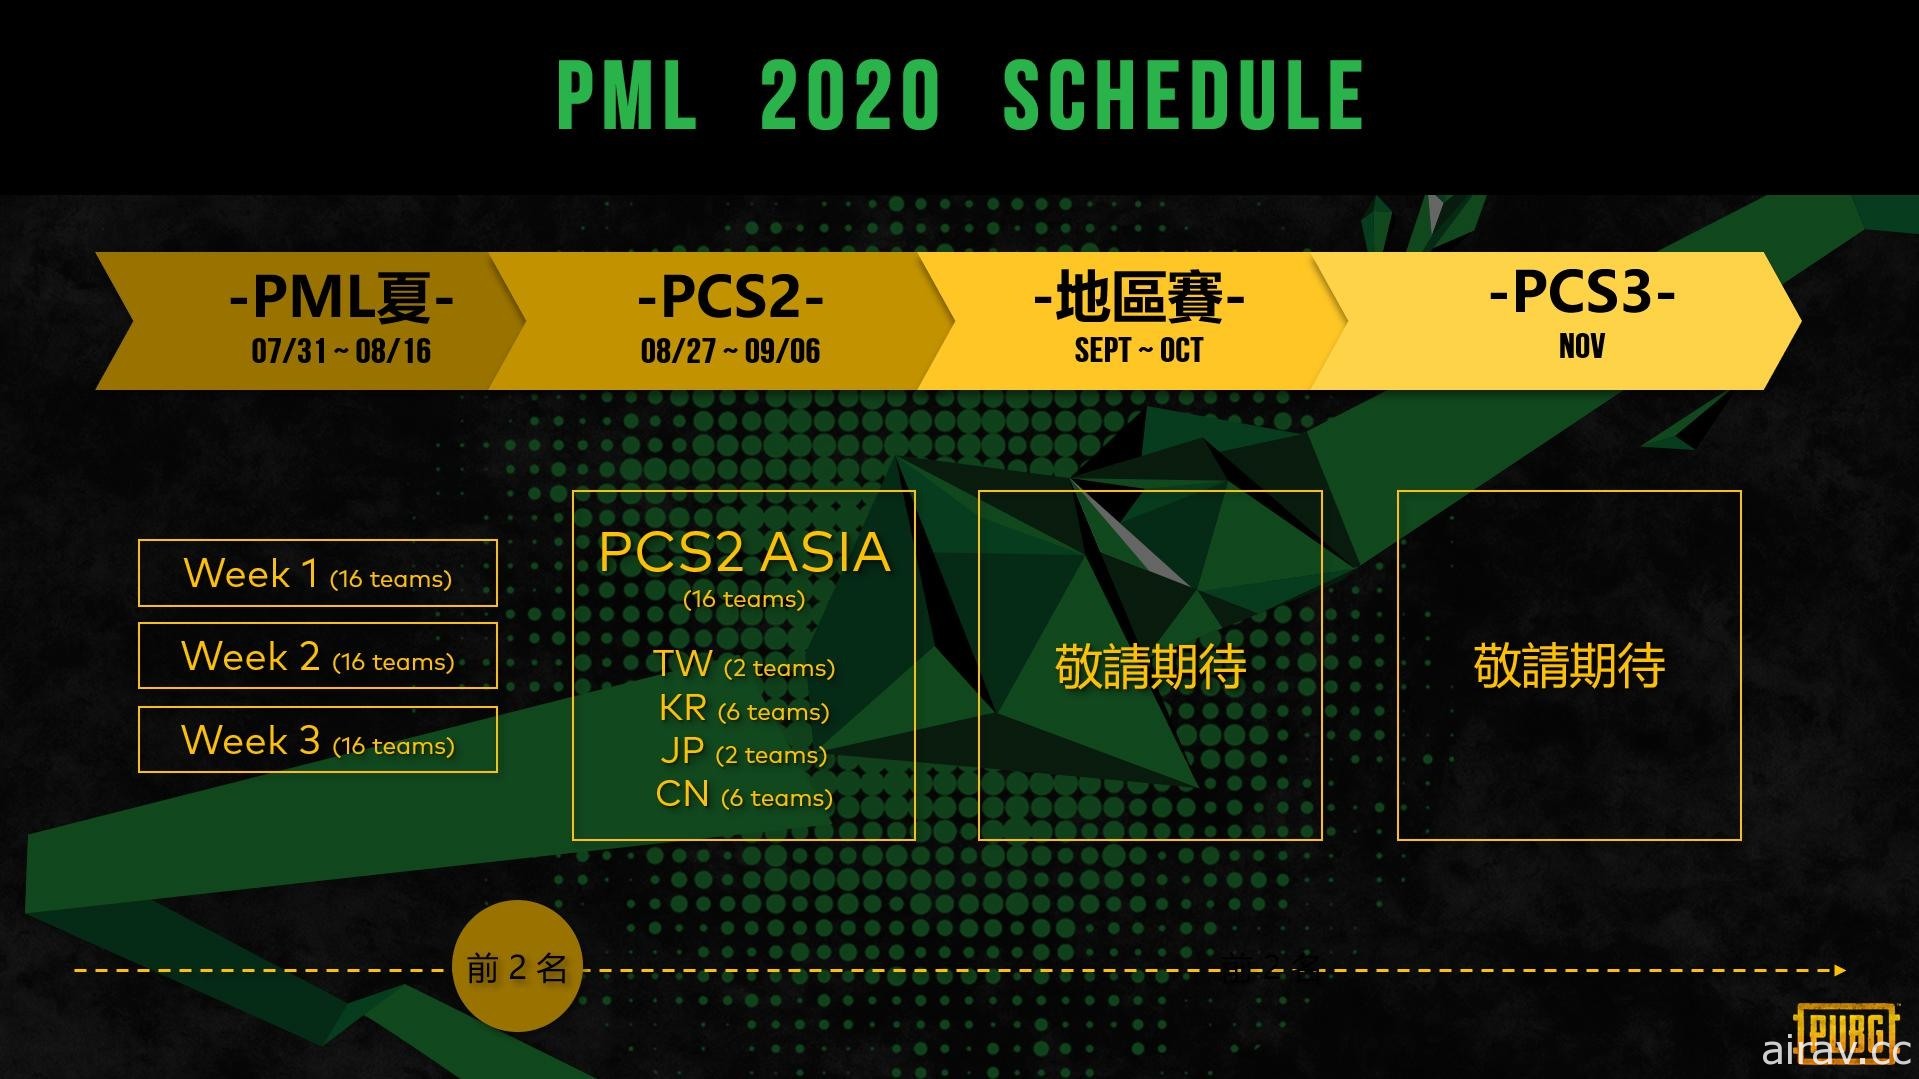 《绝地求生》2020 PML 夏季赛今晚迈入最后赛程 四大赛区 PCS2 洲际赛 8 月底登场